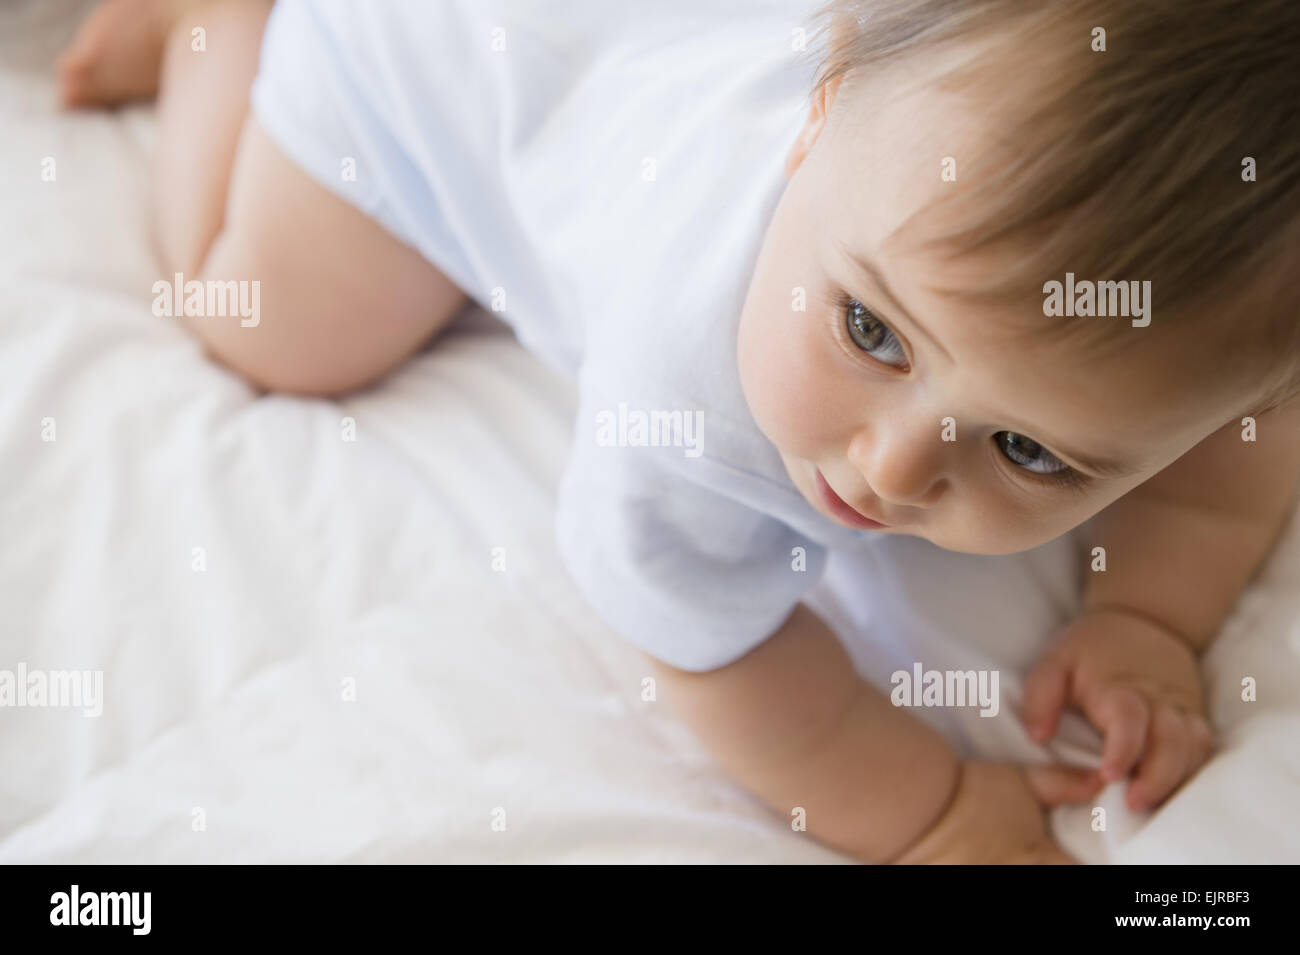 Cerca de raza mixta bebe gateando sobre la cama Foto de stock